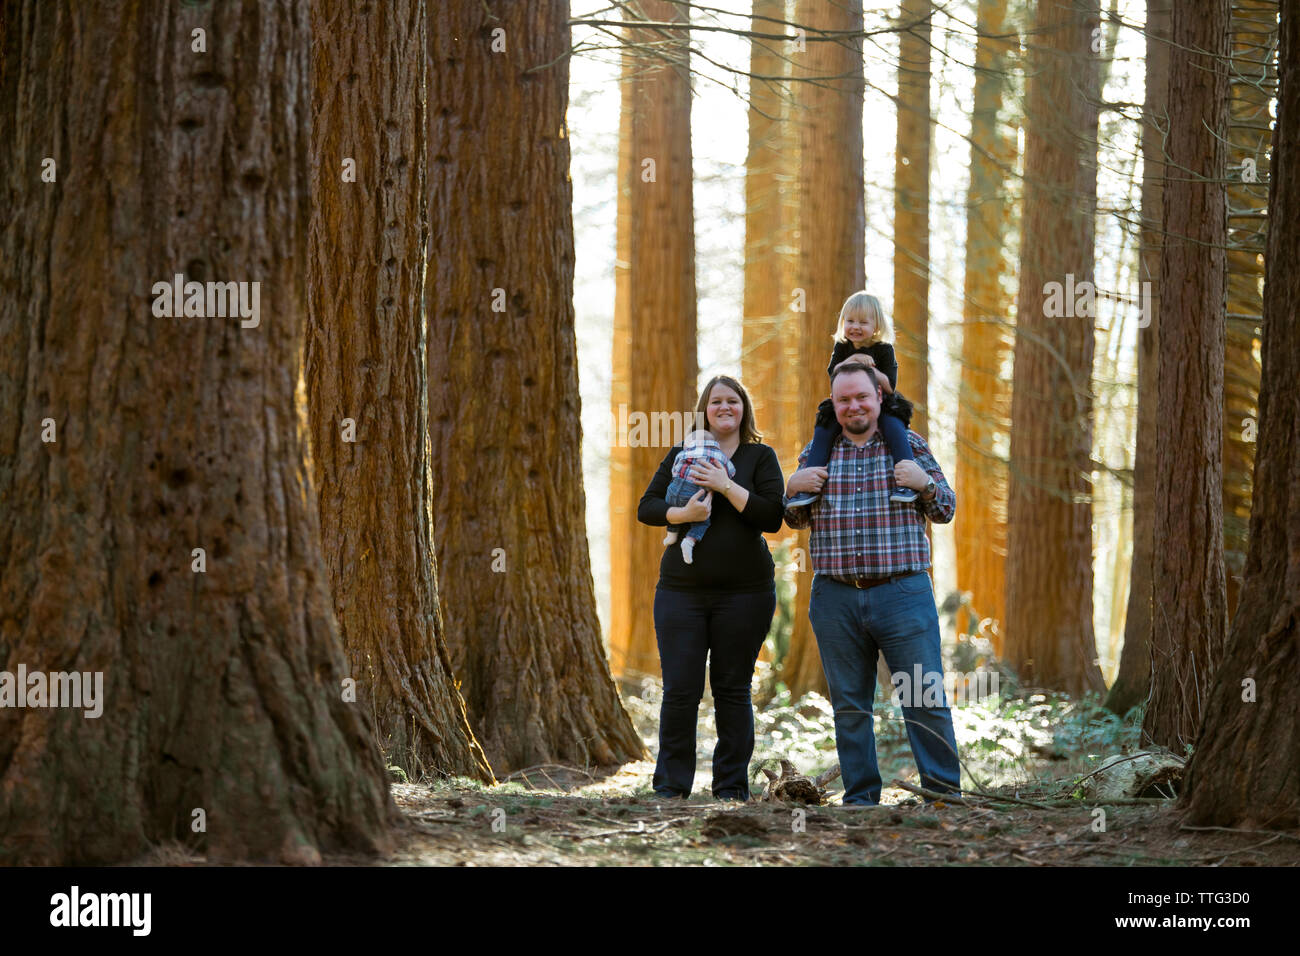 Famiglia di quattro sorridente in una foresta impostazione Foto Stock